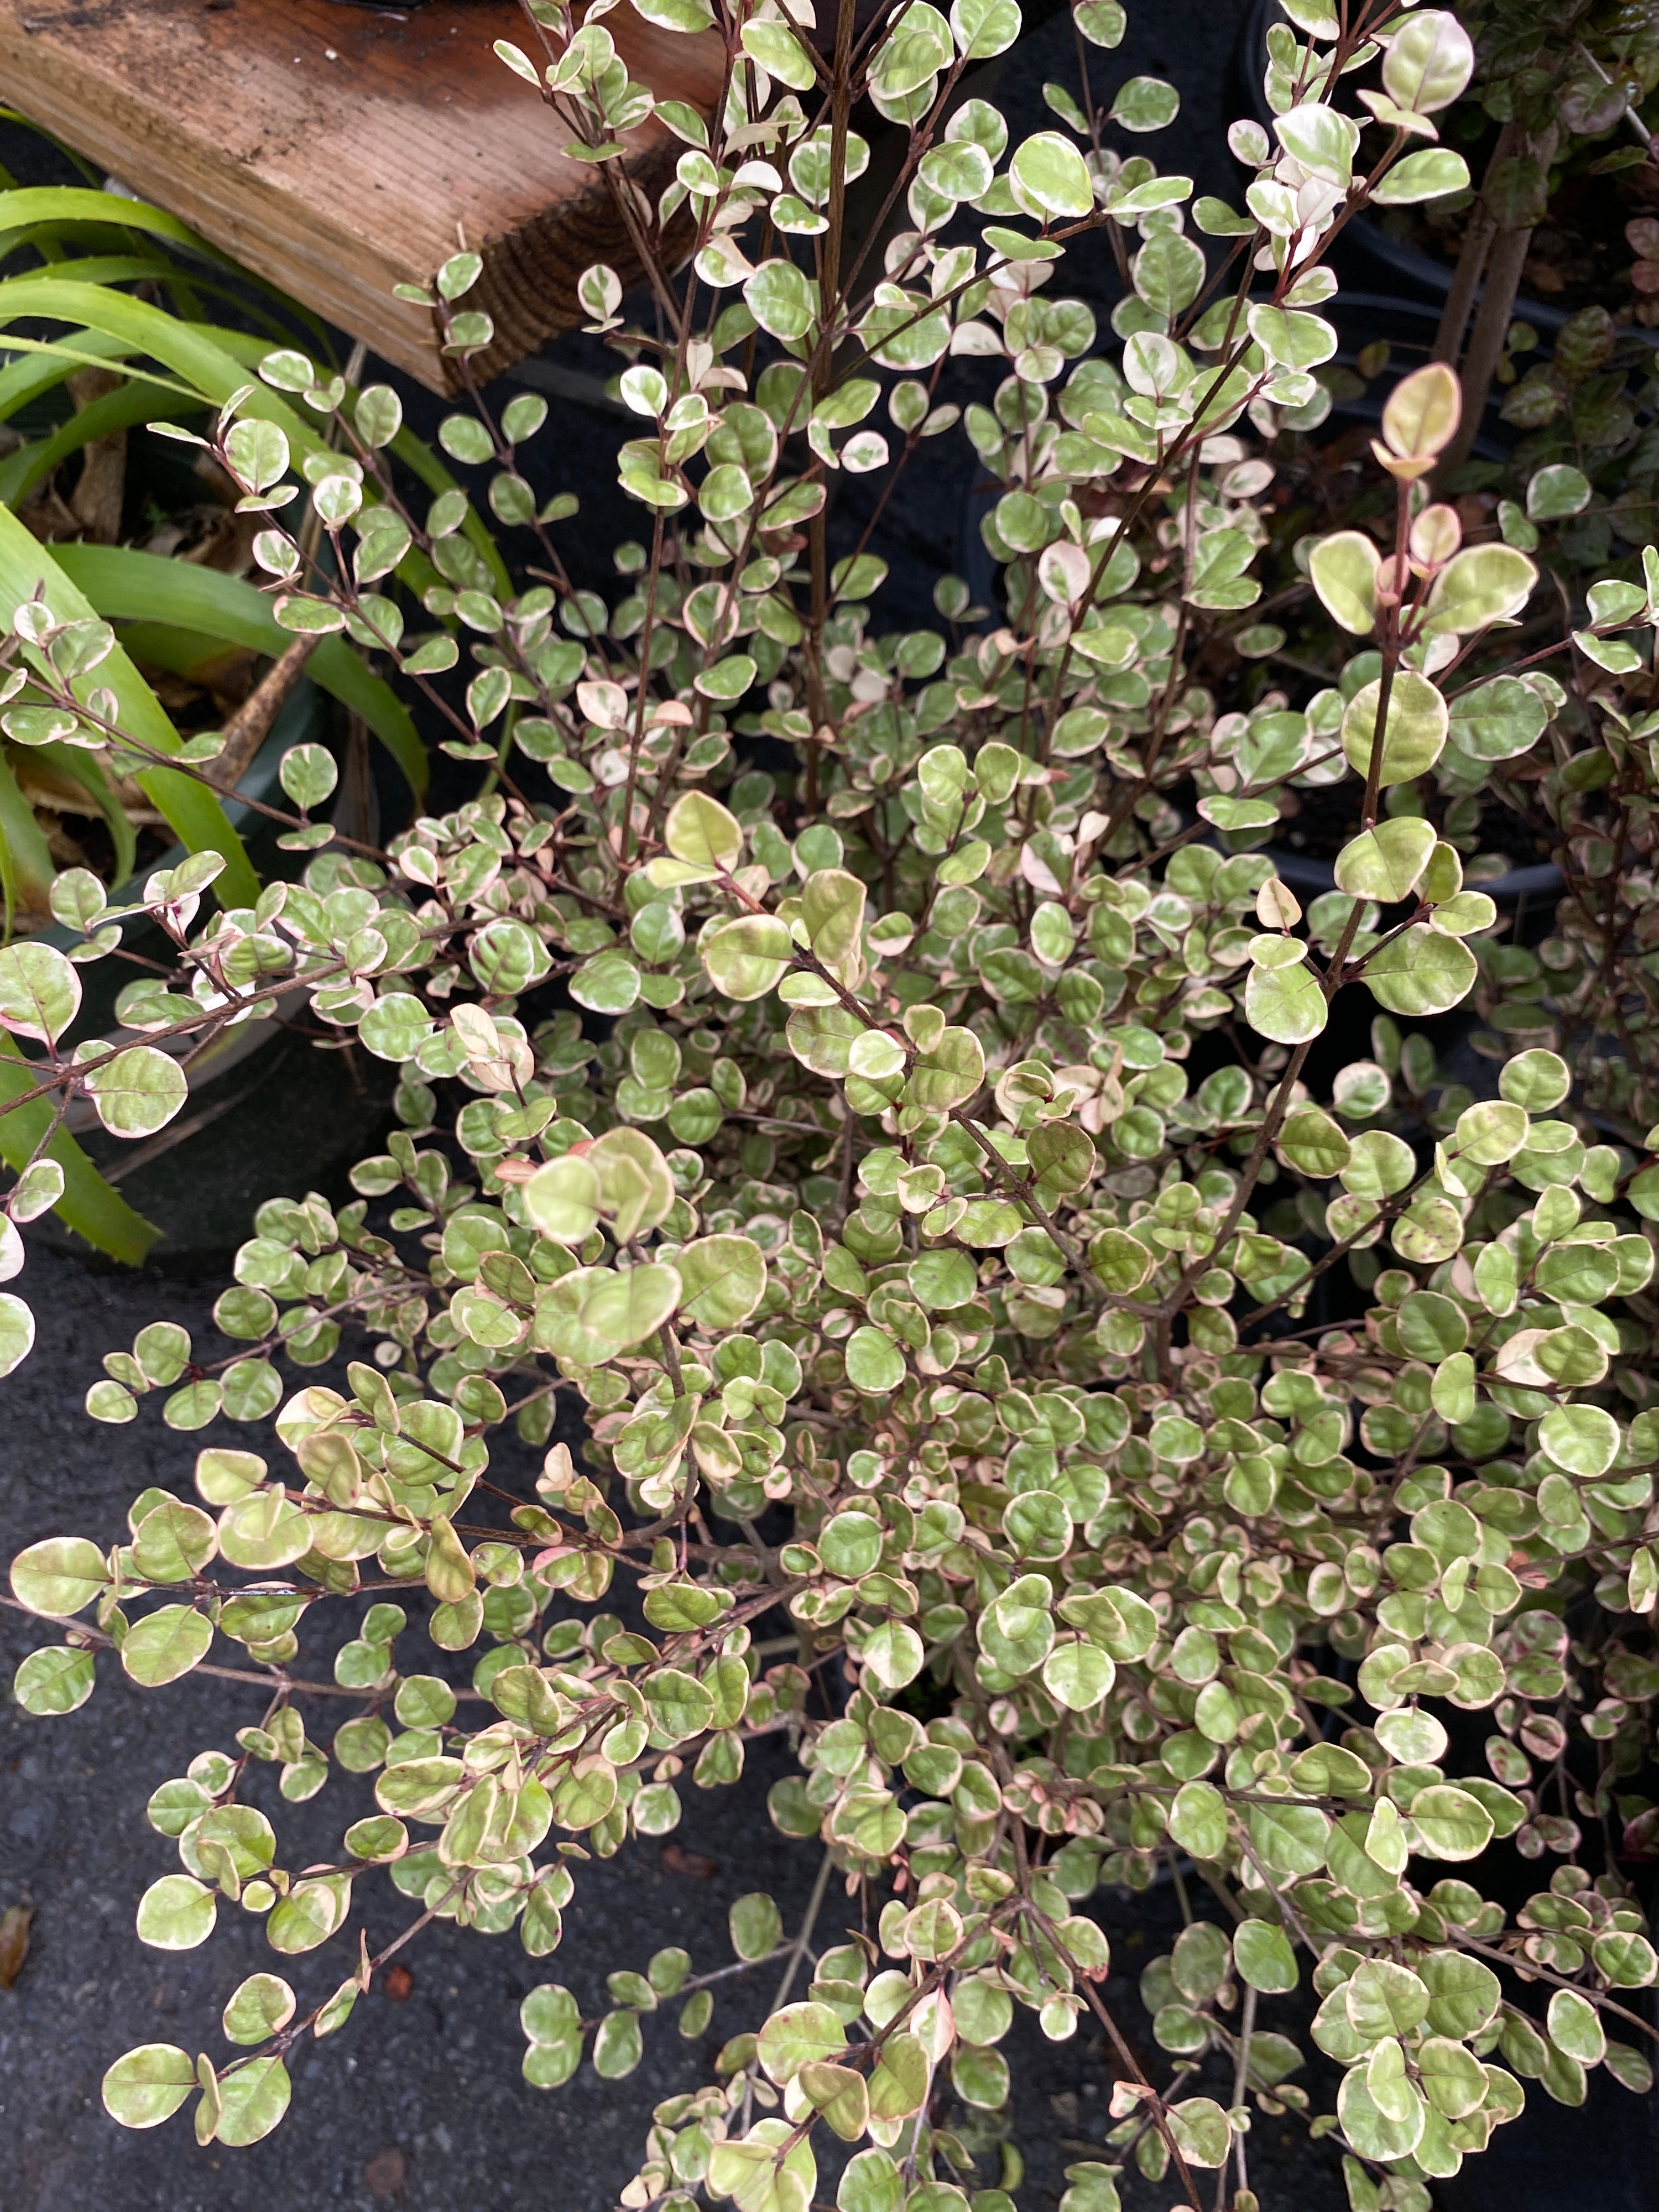 Lophomyrtus x ralphii "Sundae"